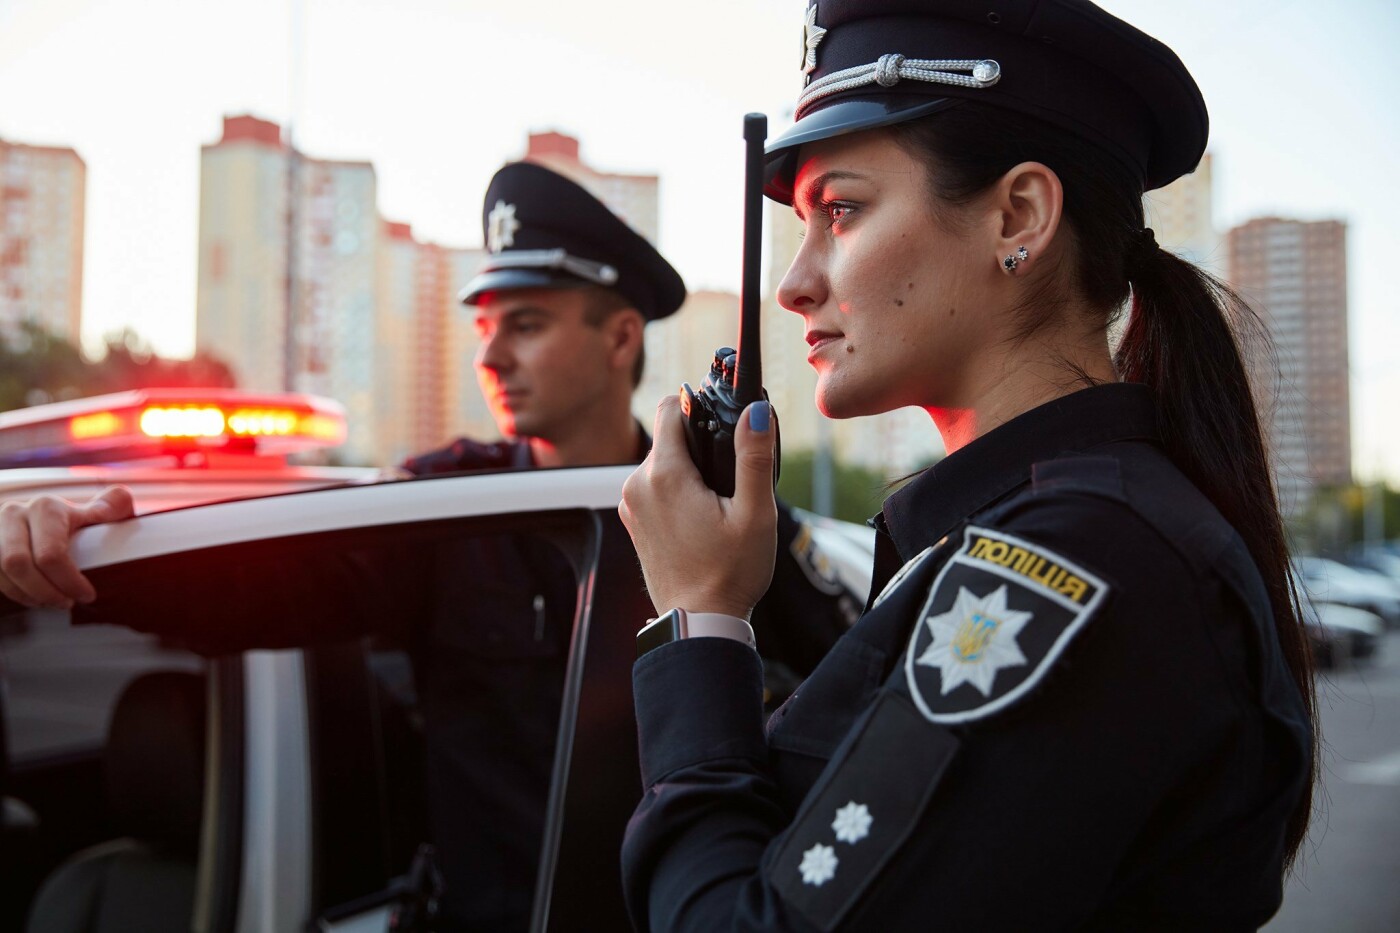 ТОП-5 причин стать украинским полицейским и как это можно сделать в Киеве